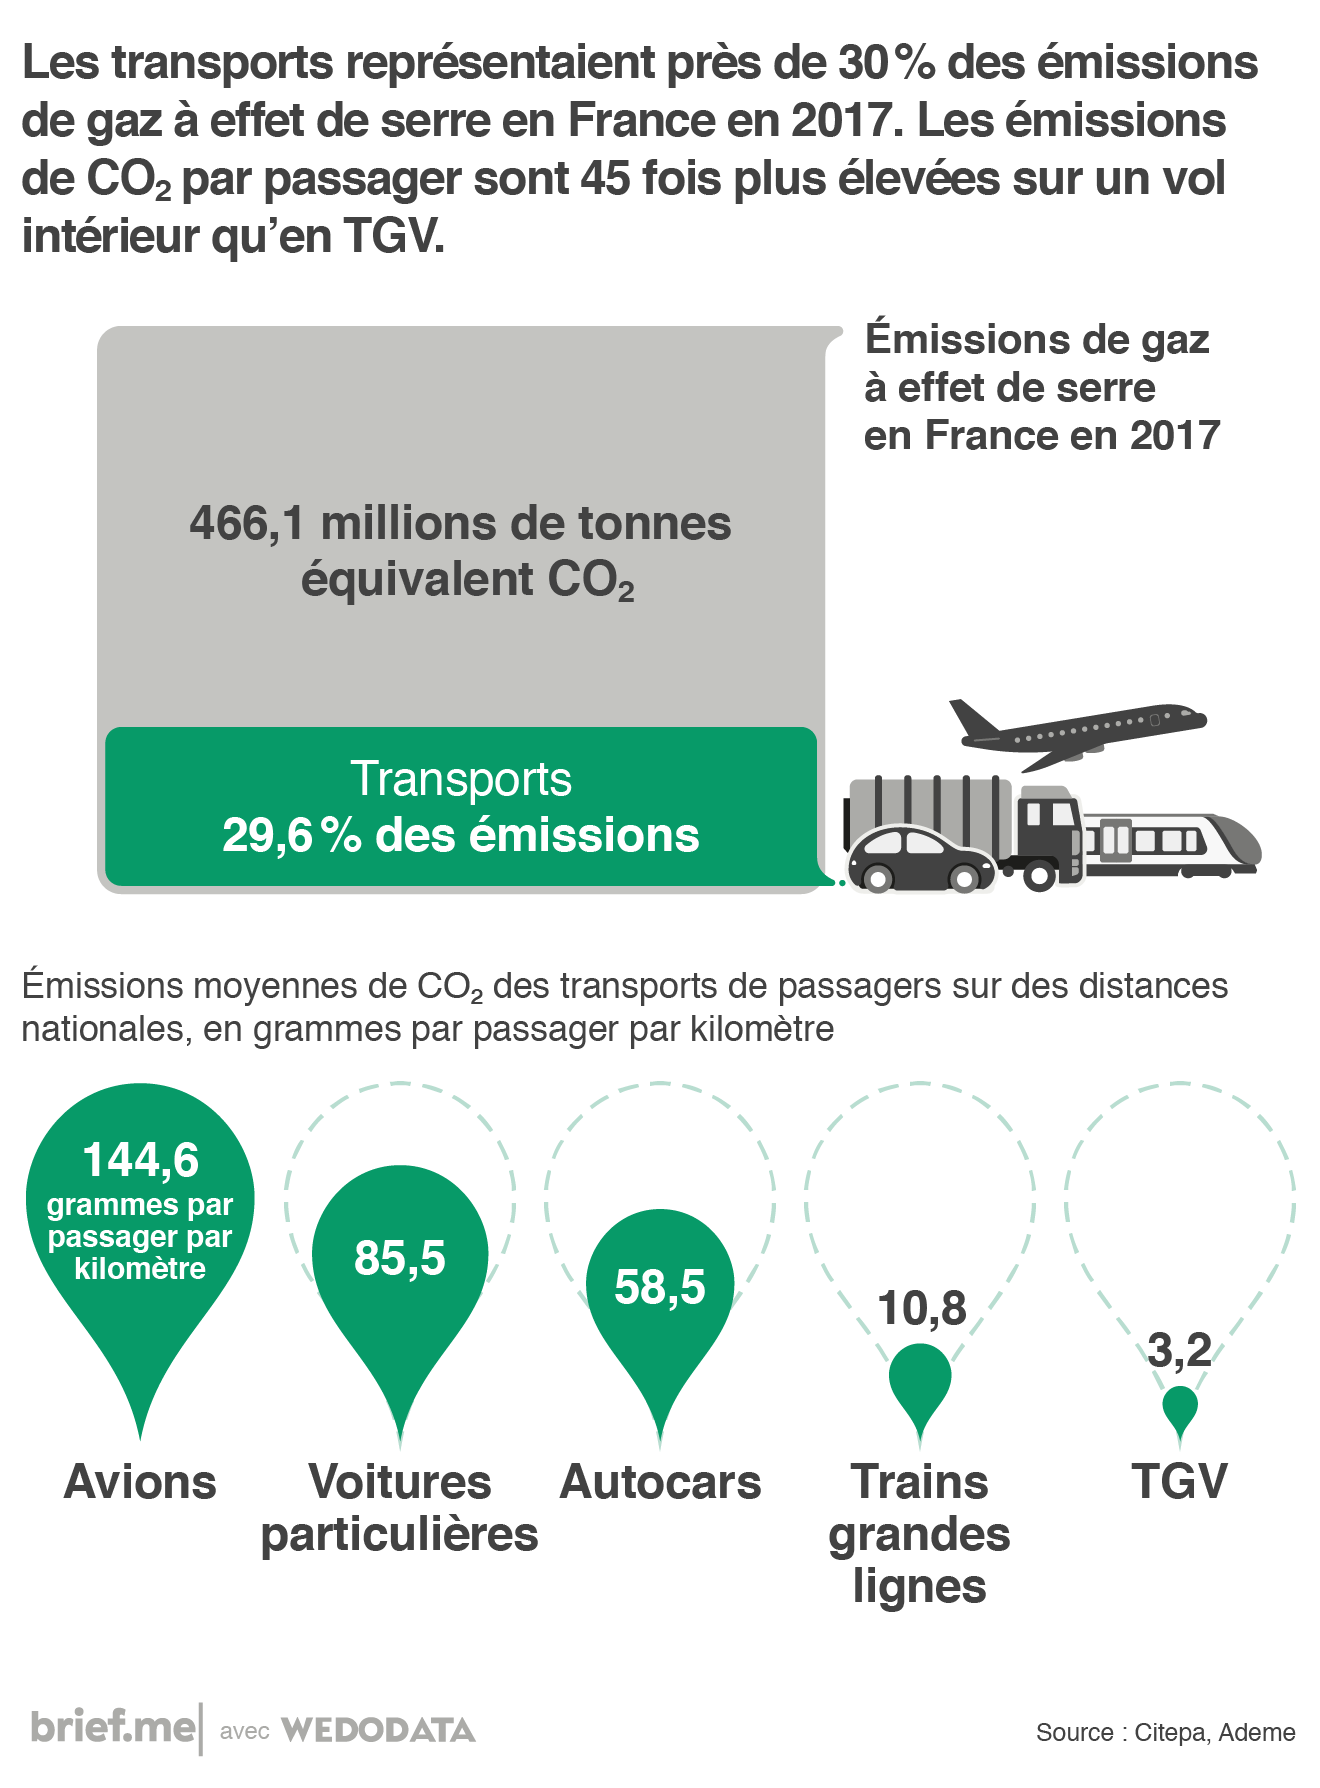 La pollution atmosphérique due aux transports